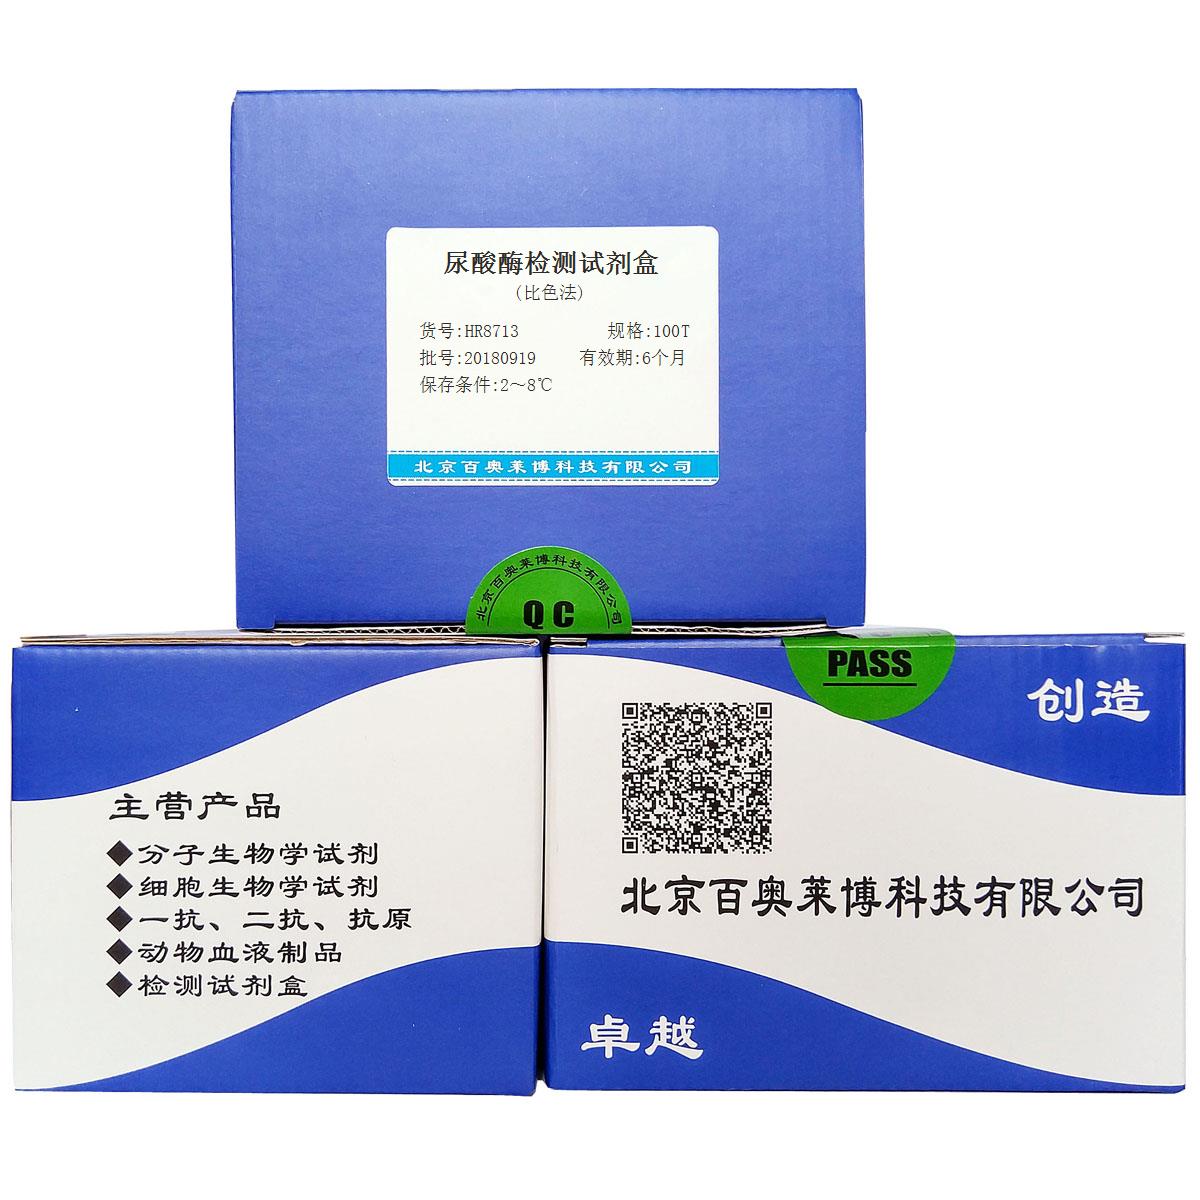 尿酸酶检测试剂盒(比色法)